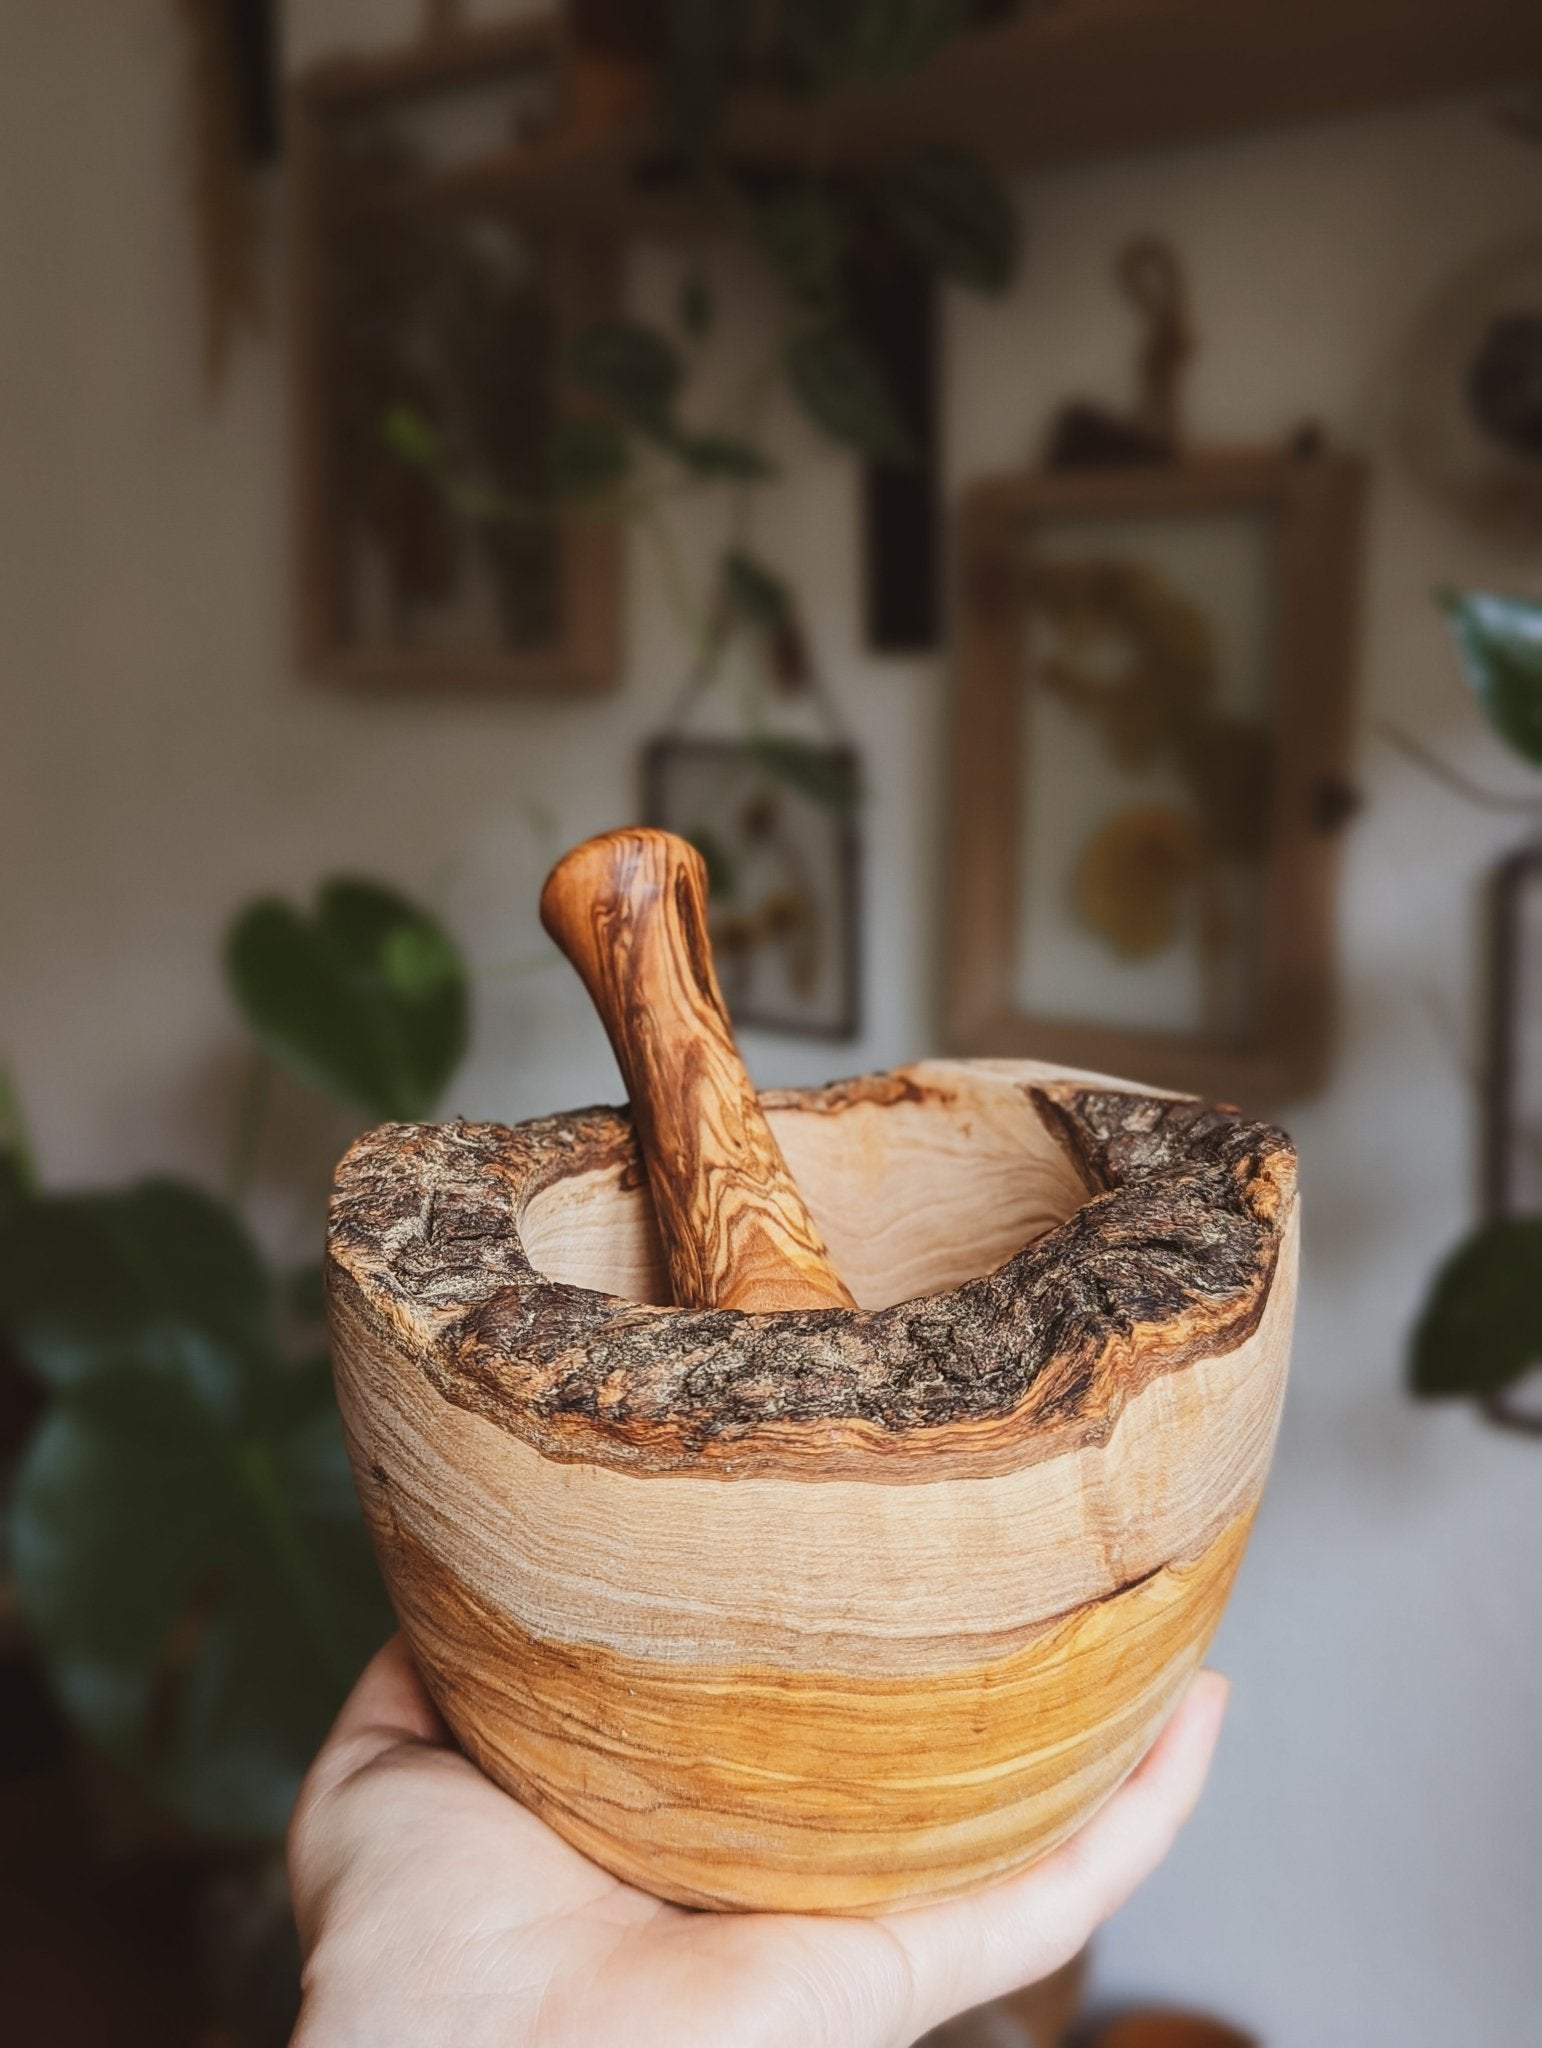 Mörser & Stößel aus Olivenholz - Rustikales, handgefertigtes Mörser- und Stößelset aus natürlichem Holz,  gehalten in einer Hand, im Hintergrund sieht man eine Wand behangen mit Pflanzen